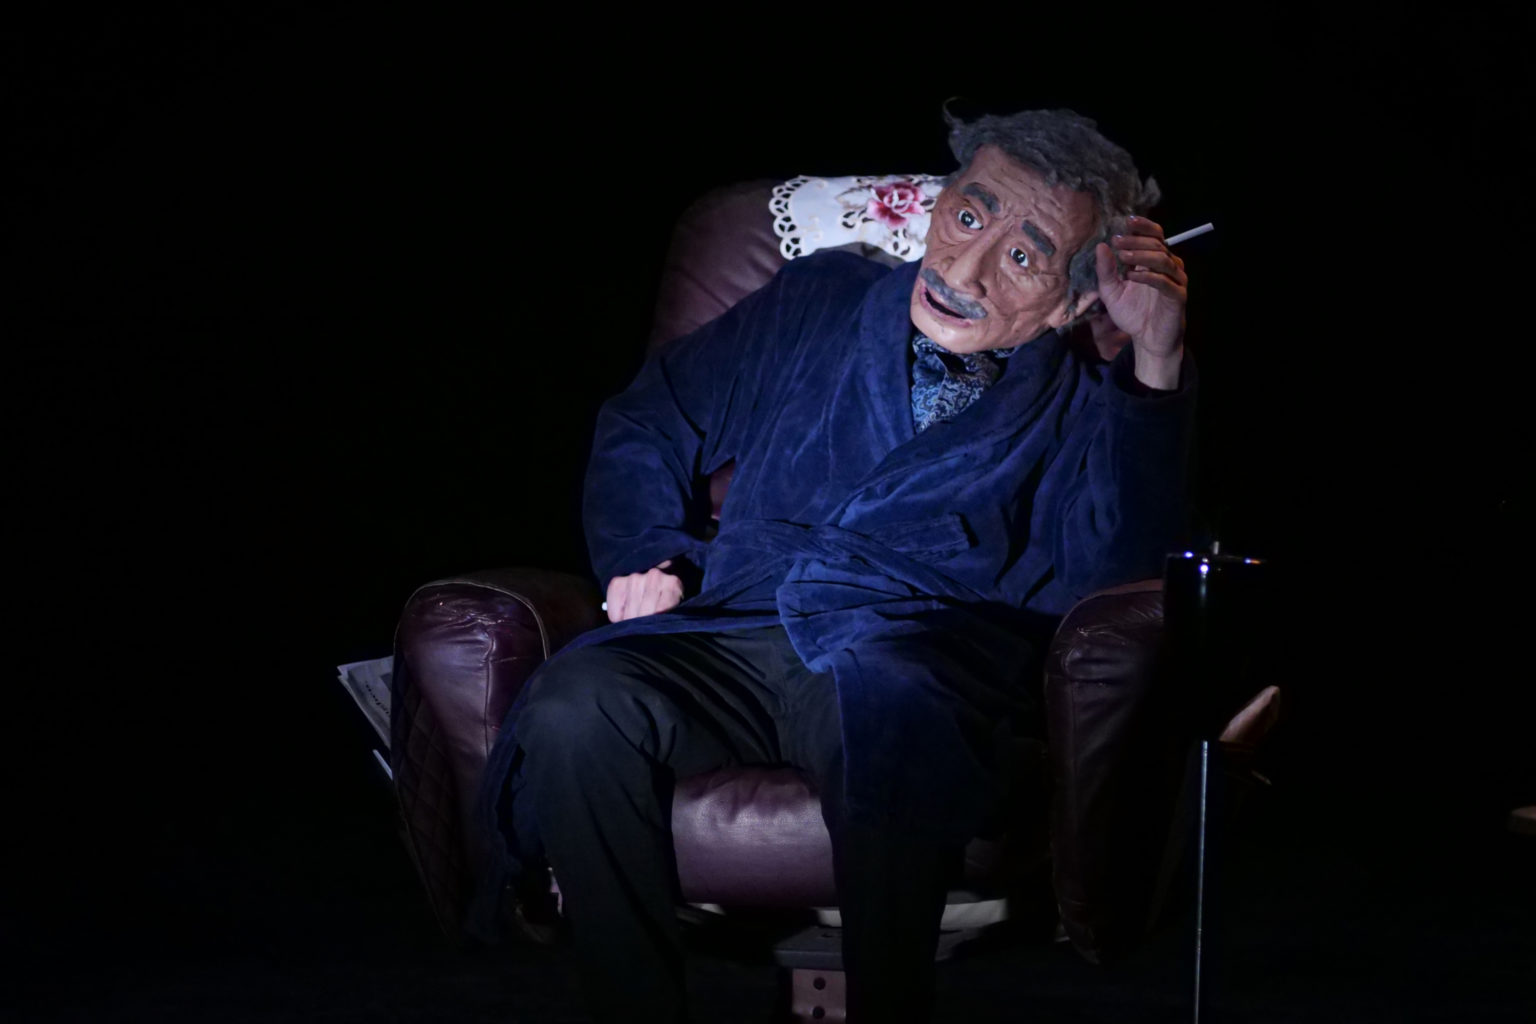 Photo du spectacle "Parti en fumée" où l'on voit la marionnette représentant le père d'Othmane Moumen. Il est assis dans un fauteuil et il fume.